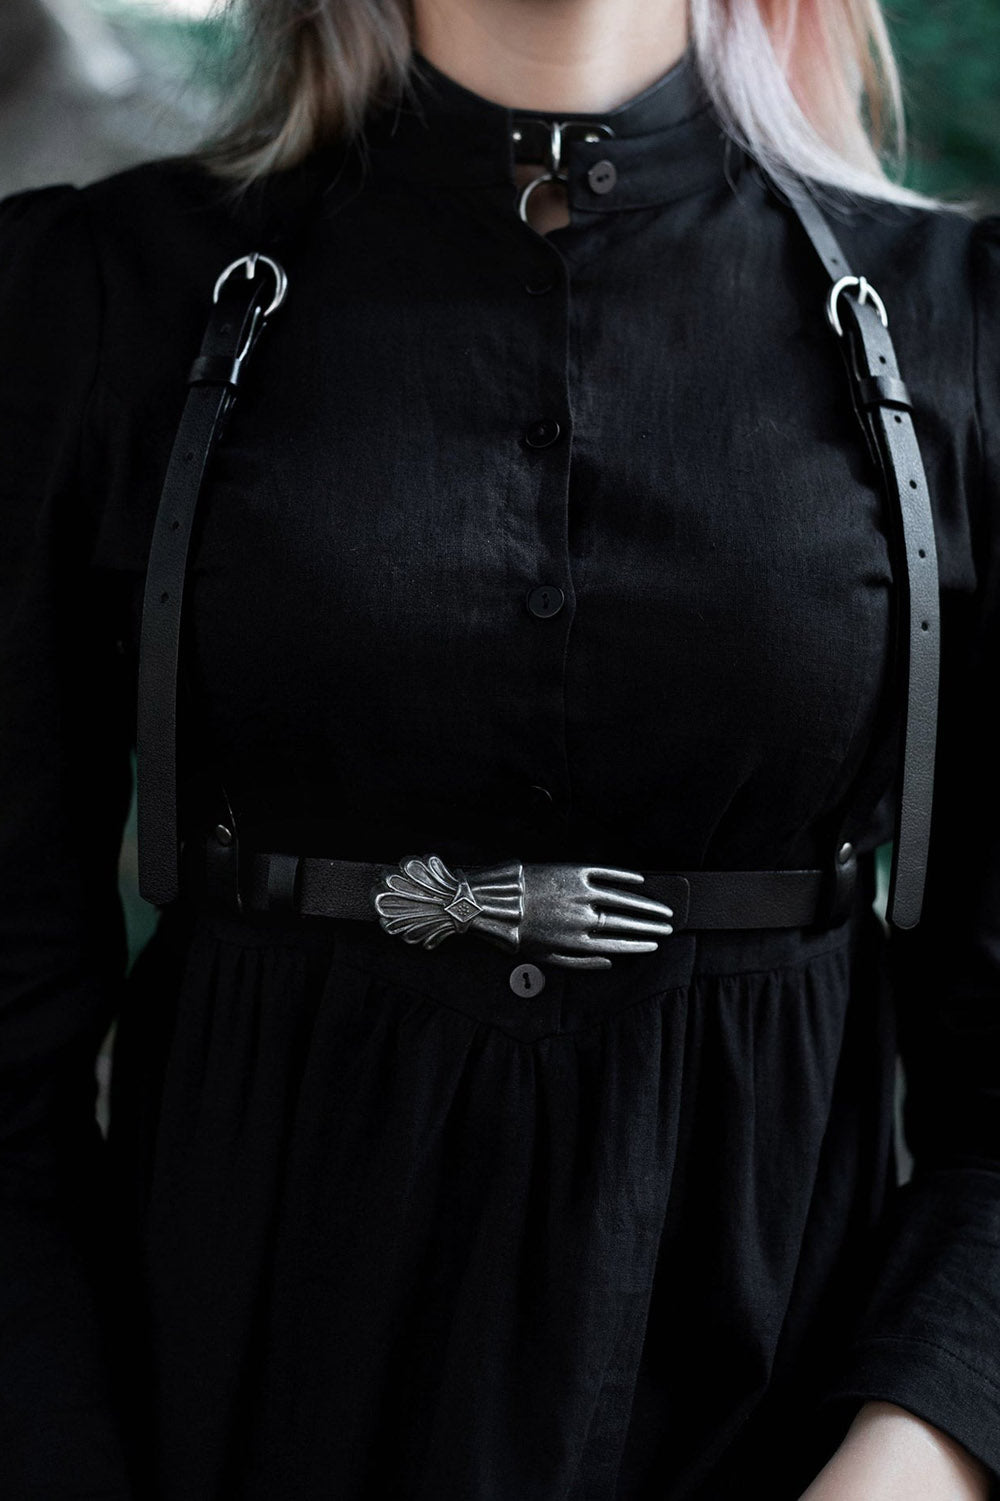 creepy belt for women